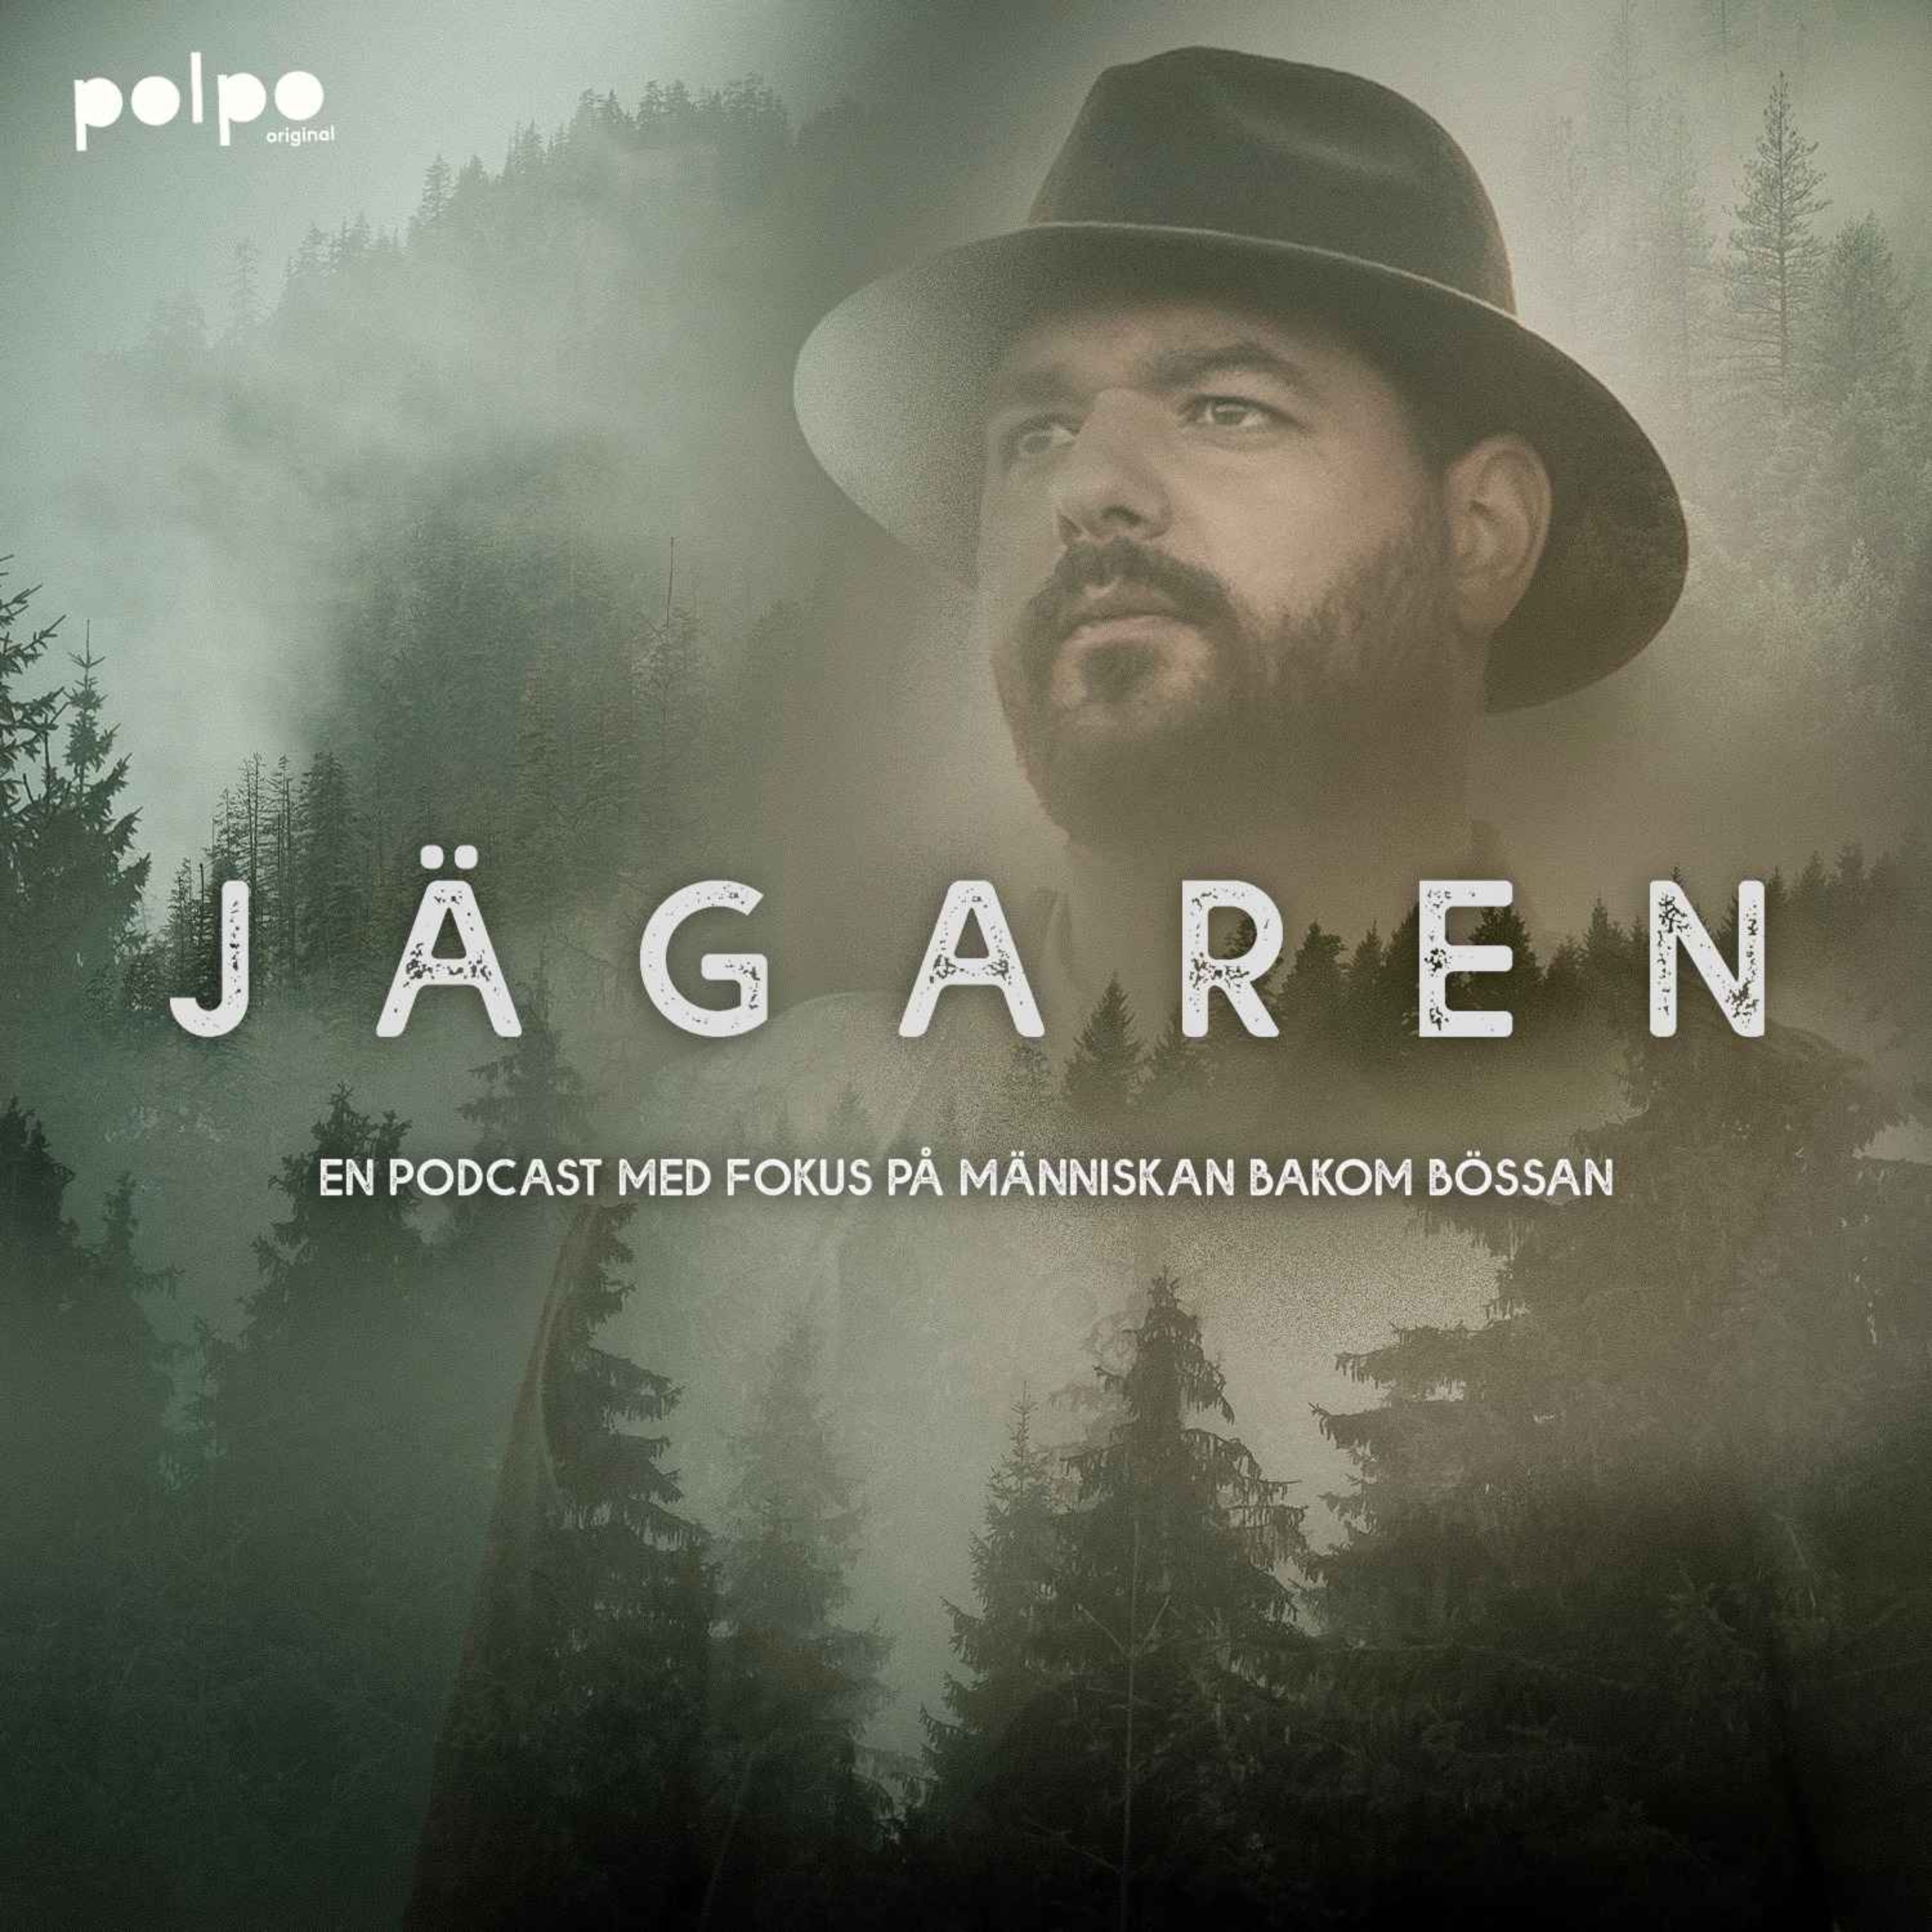 cover art for Jägaren från Polpo Play – Trailer